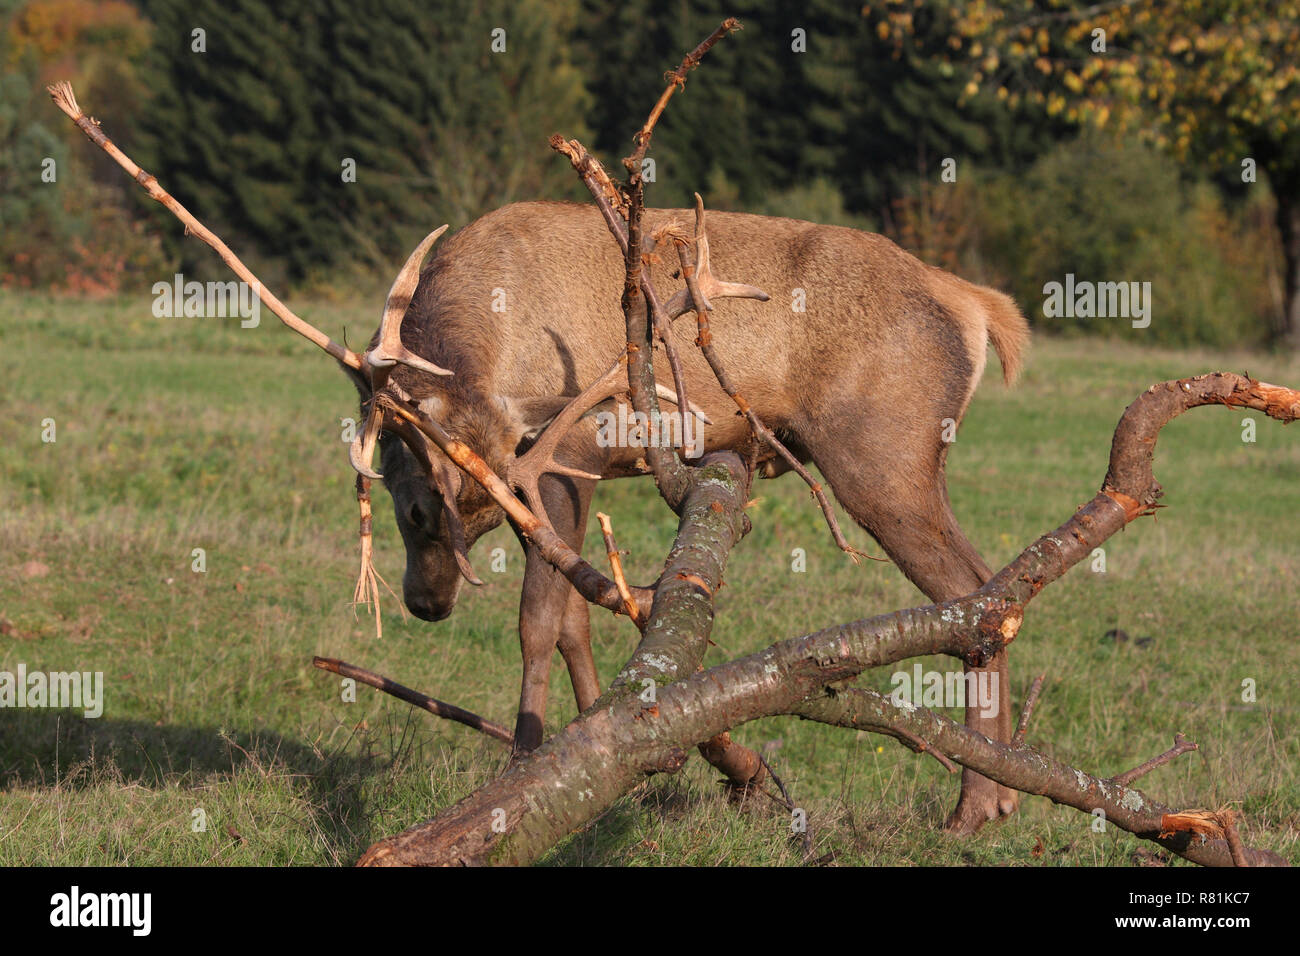 Ciervo rojo (Cervus elaphus). El ciervo frota su cornamenta de ramitas para extraer el terciopelo. Alemania Foto de stock